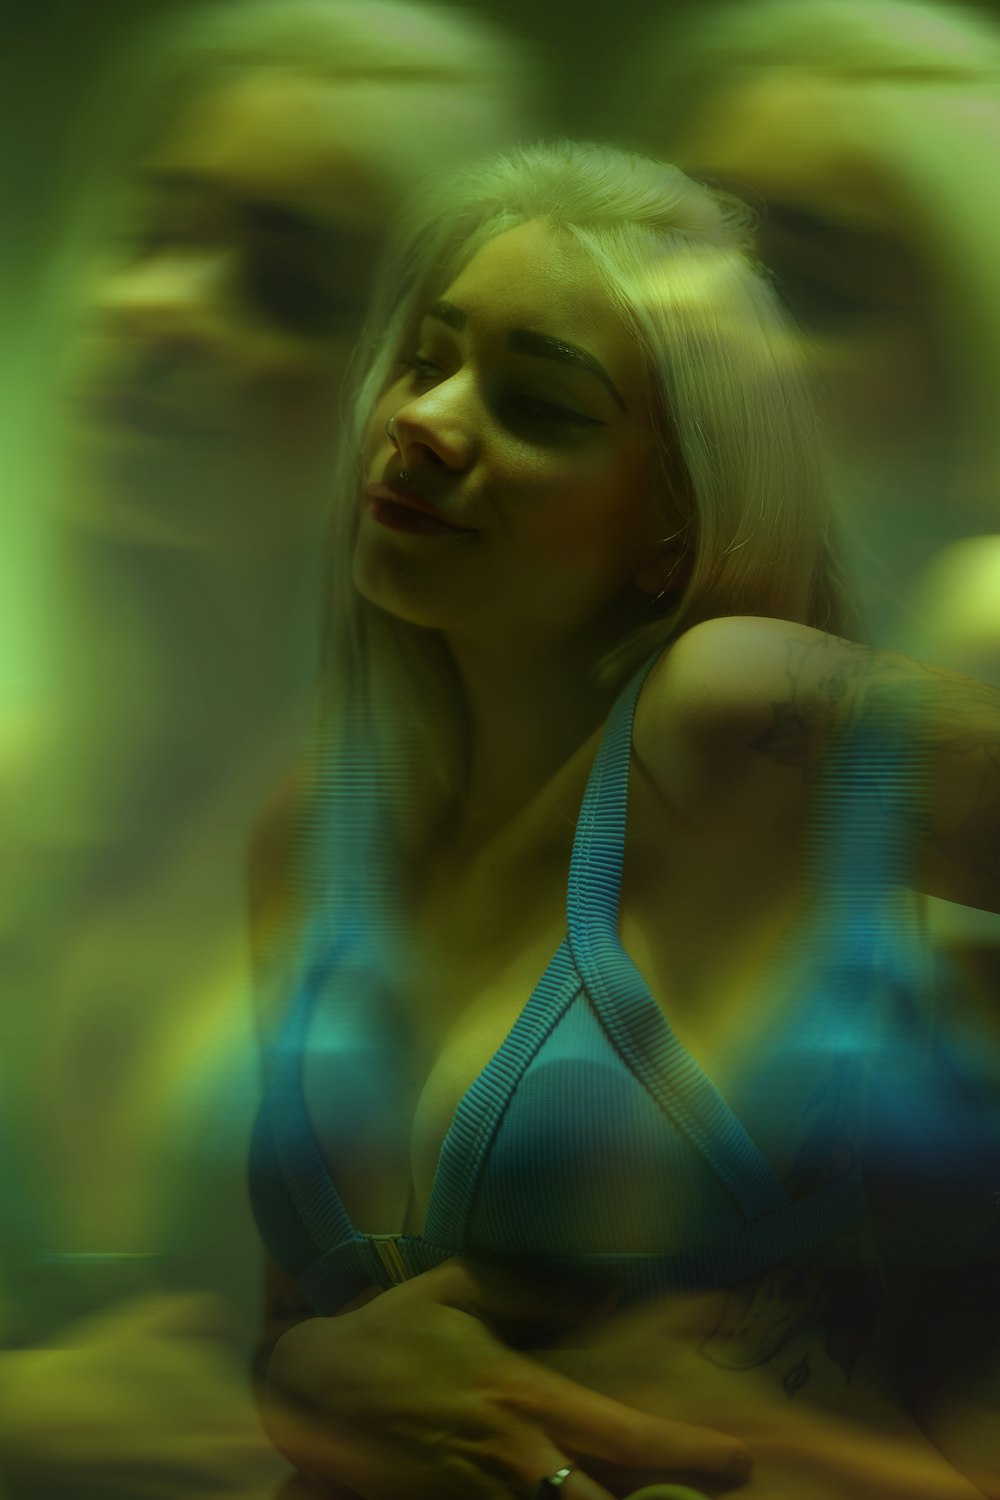 a blurry photo of a woman in a bikini